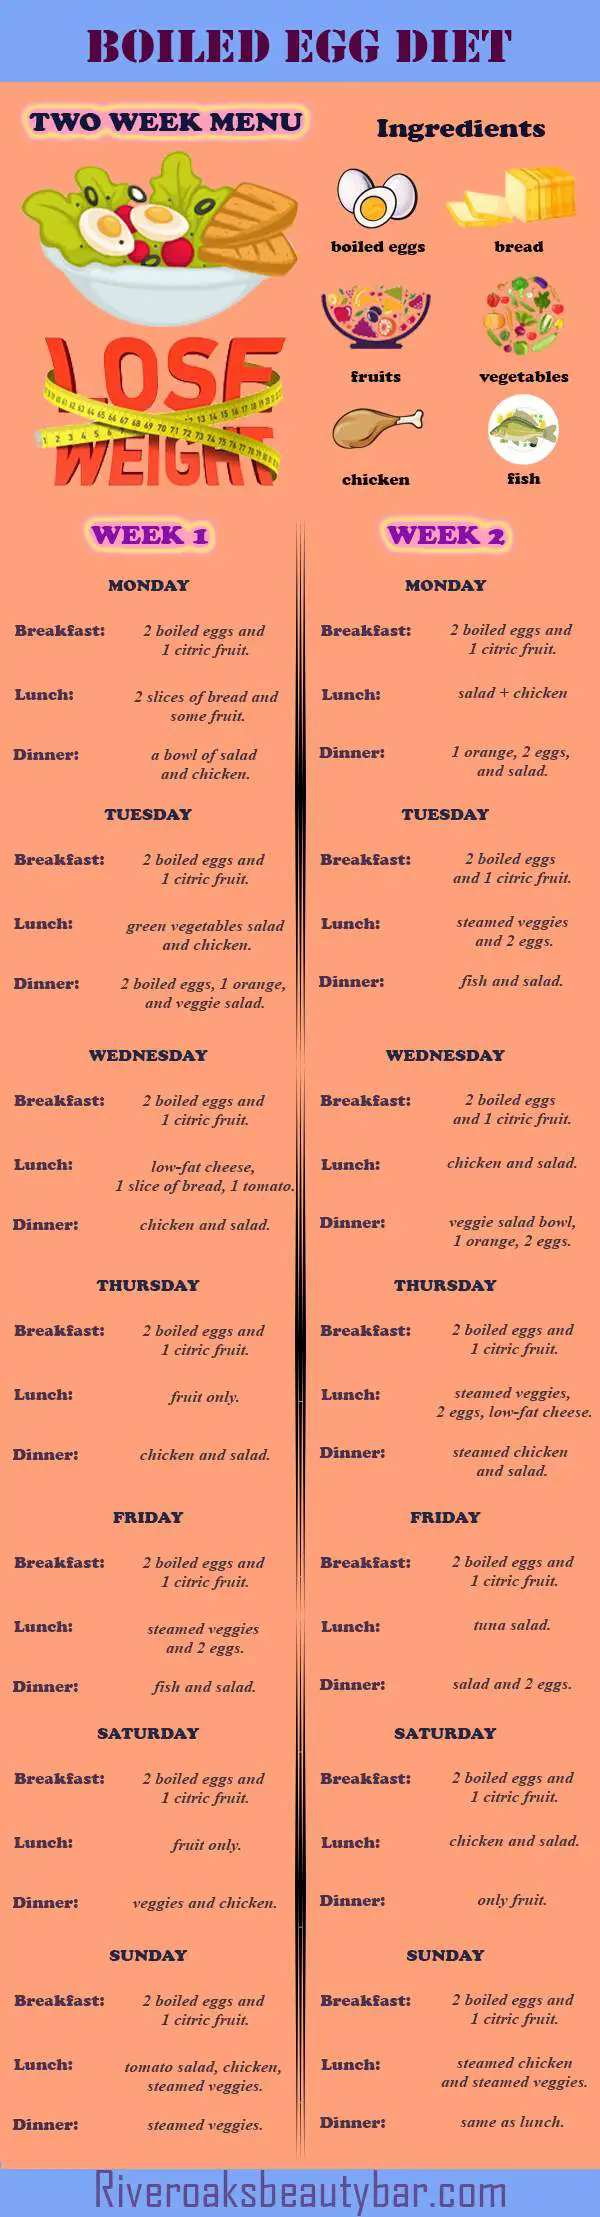 Boiled Egg Diet Plan Infographic